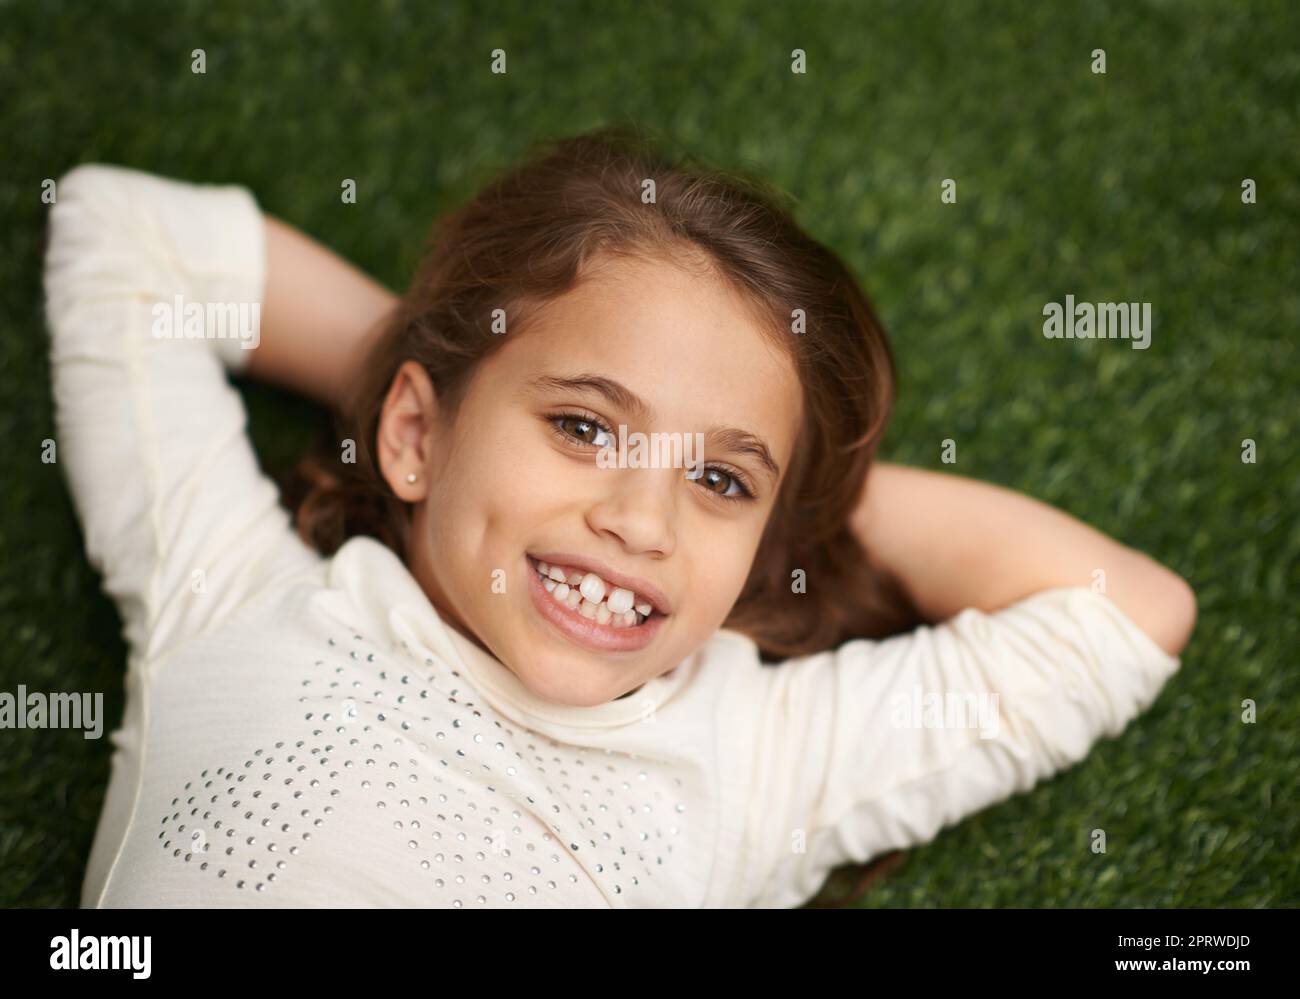 Des journées d'enfance insouciantes. Portrait en grand angle d'une petite fille mignonne couché sur le dos de l'herbe Banque D'Images